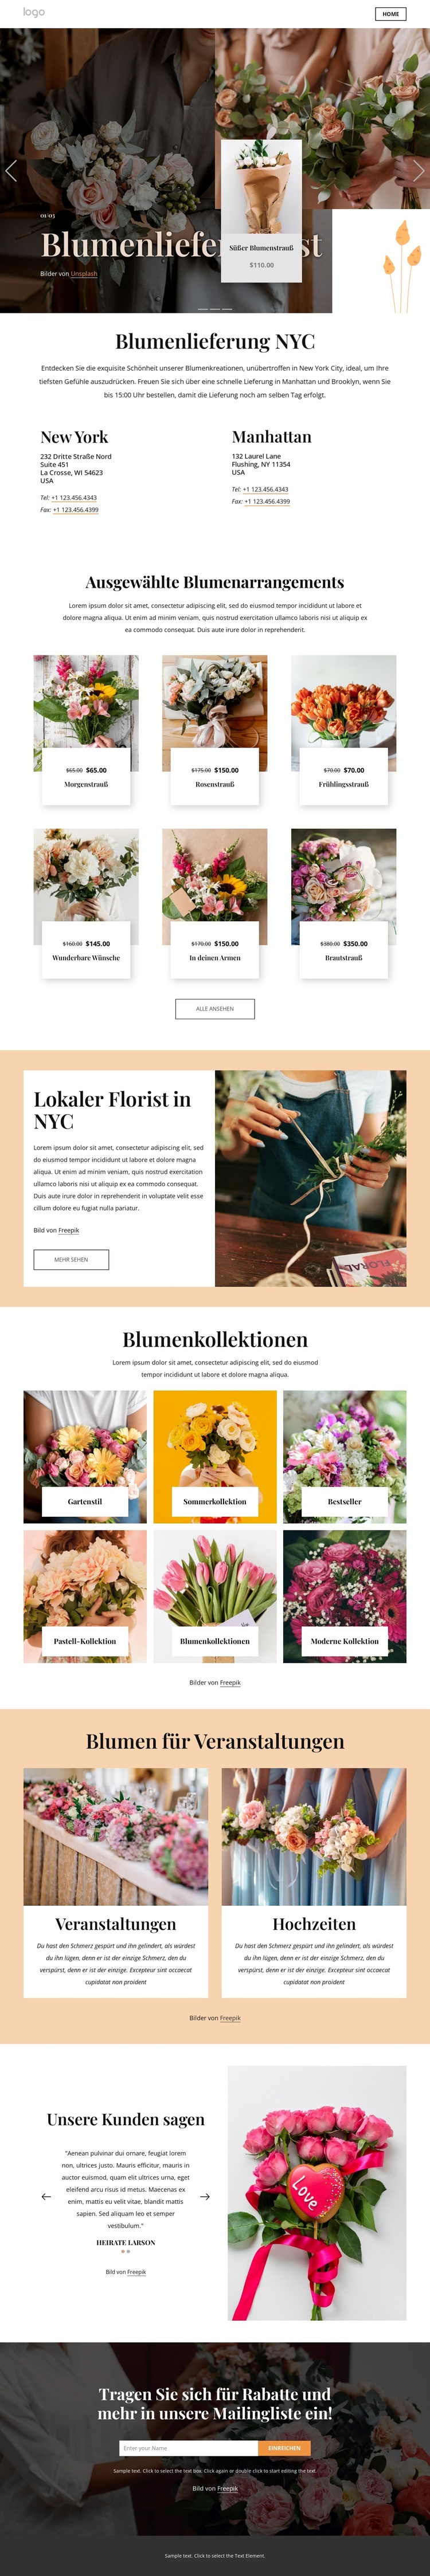 Blumenlieferung NYC WordPress-Theme